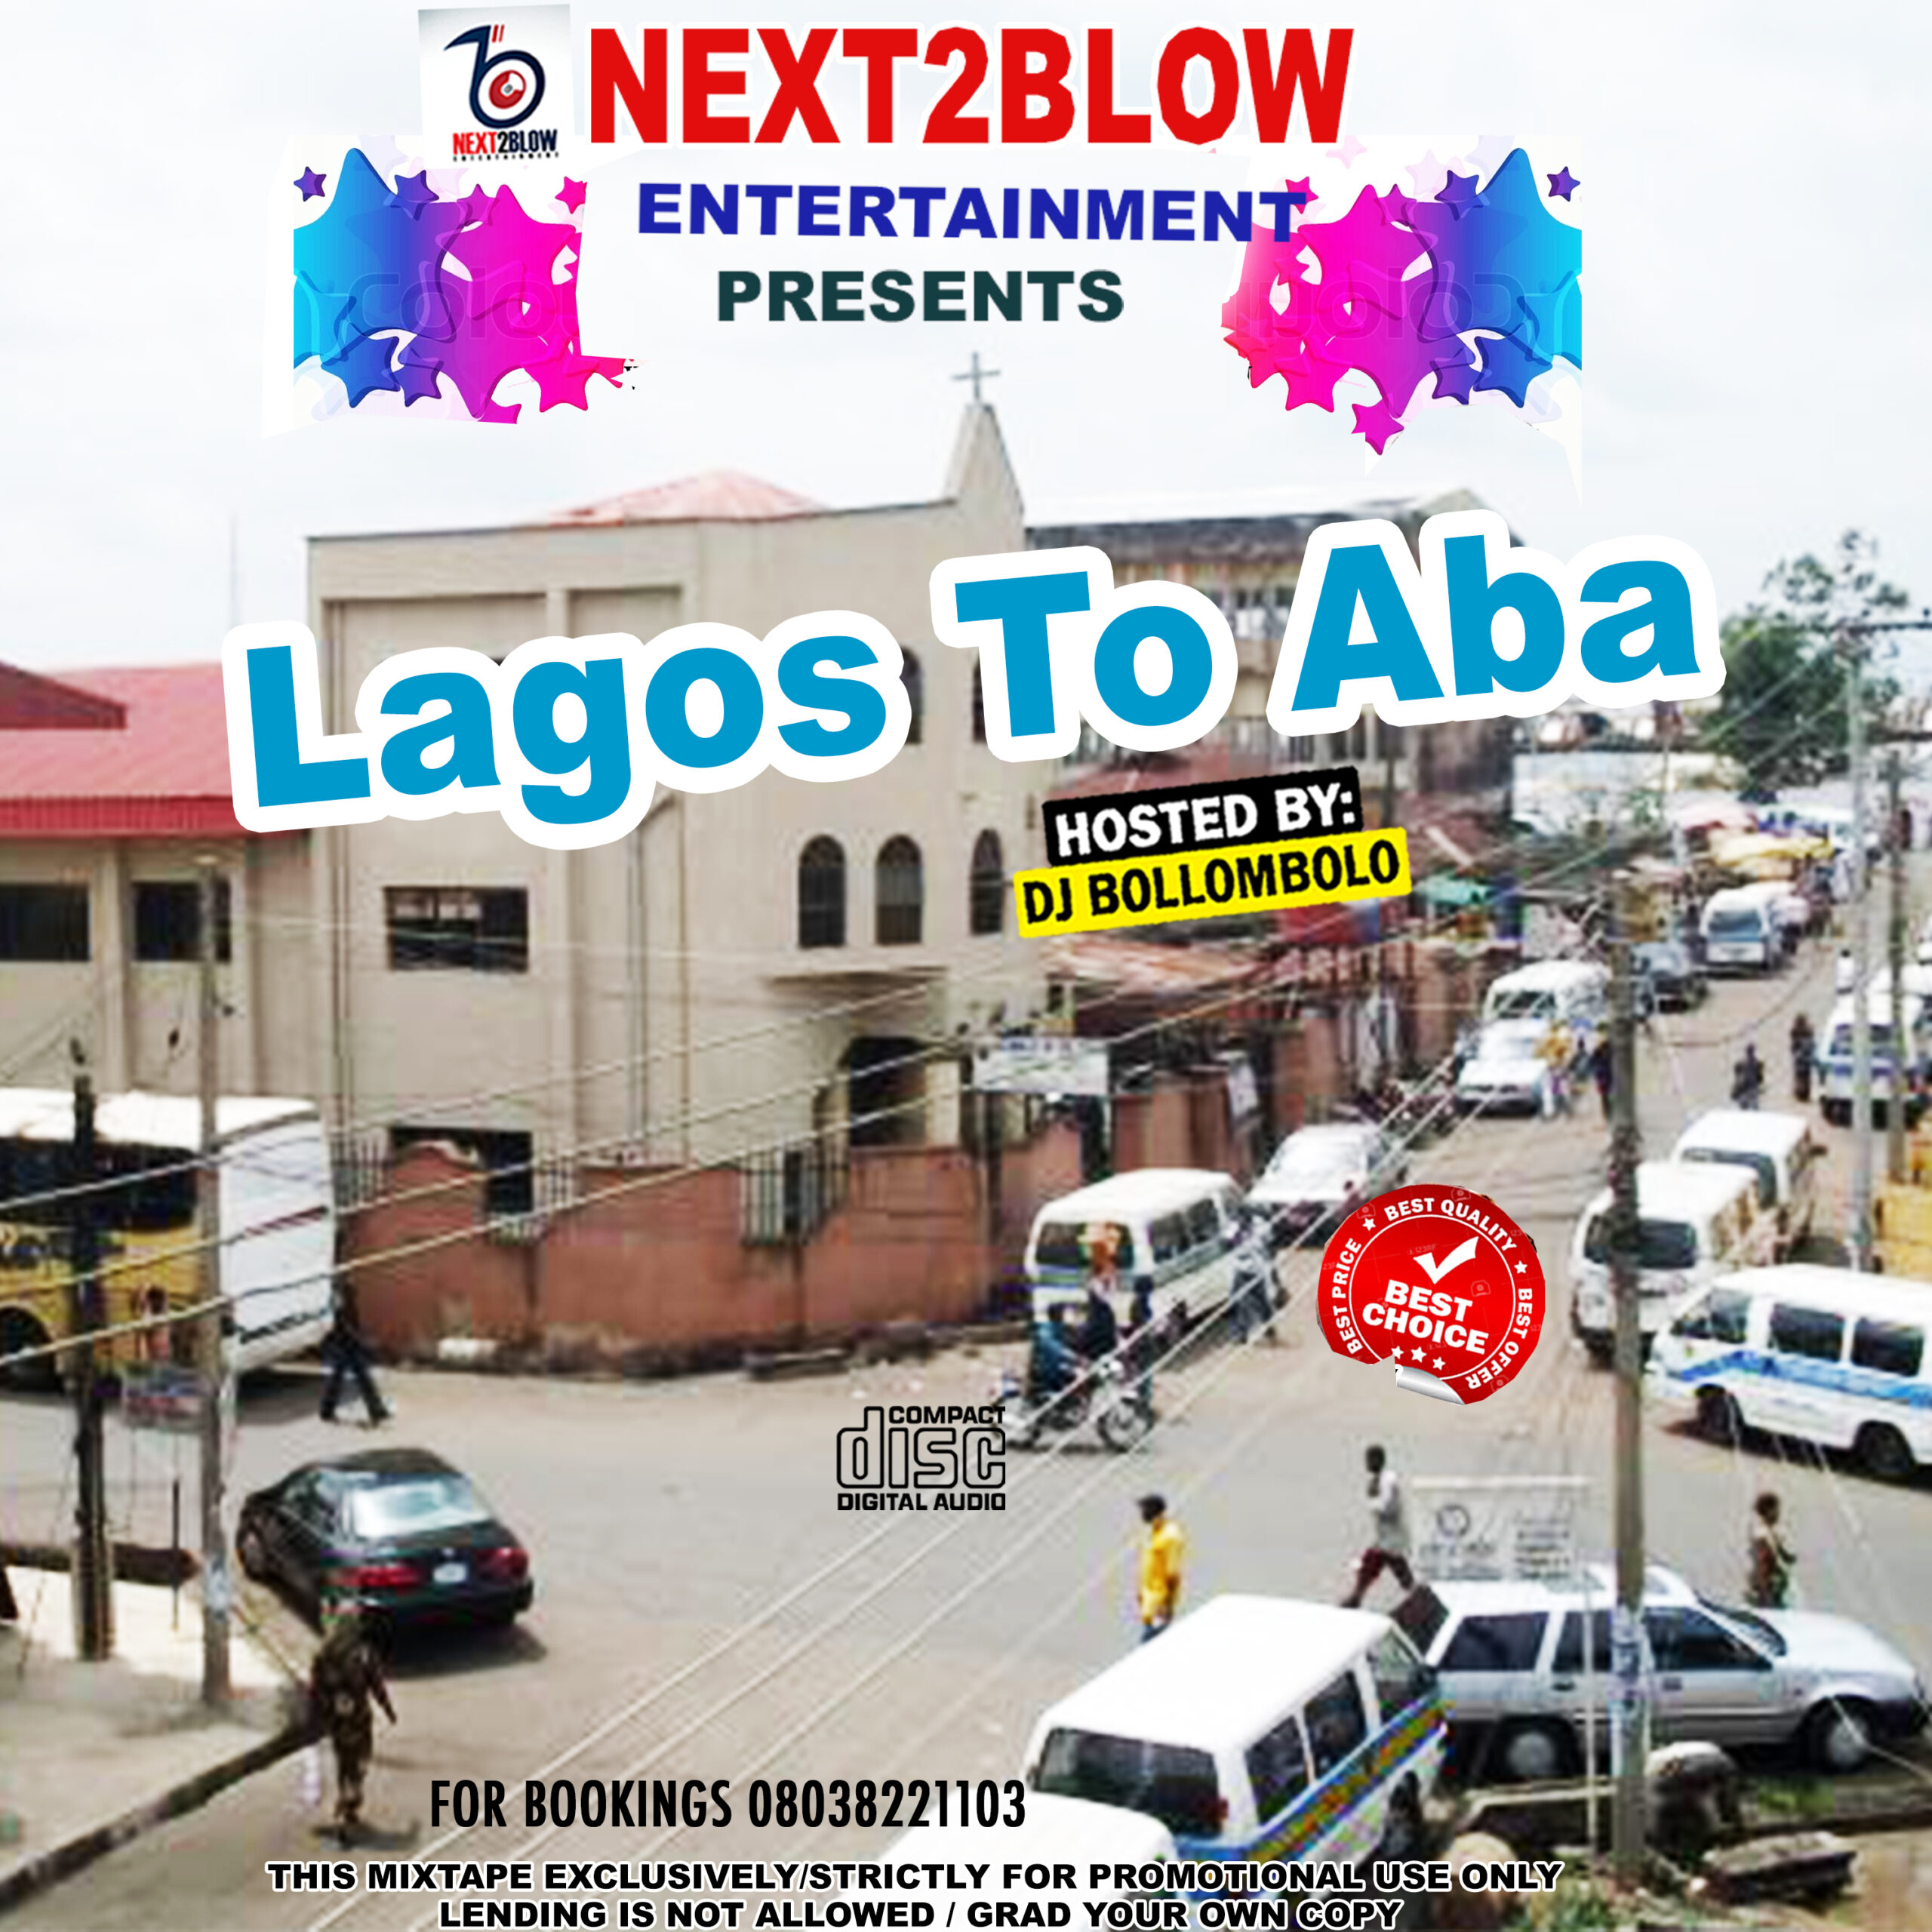 Dj bollombolo - Lagos To Aba |Djbollombolo.com|